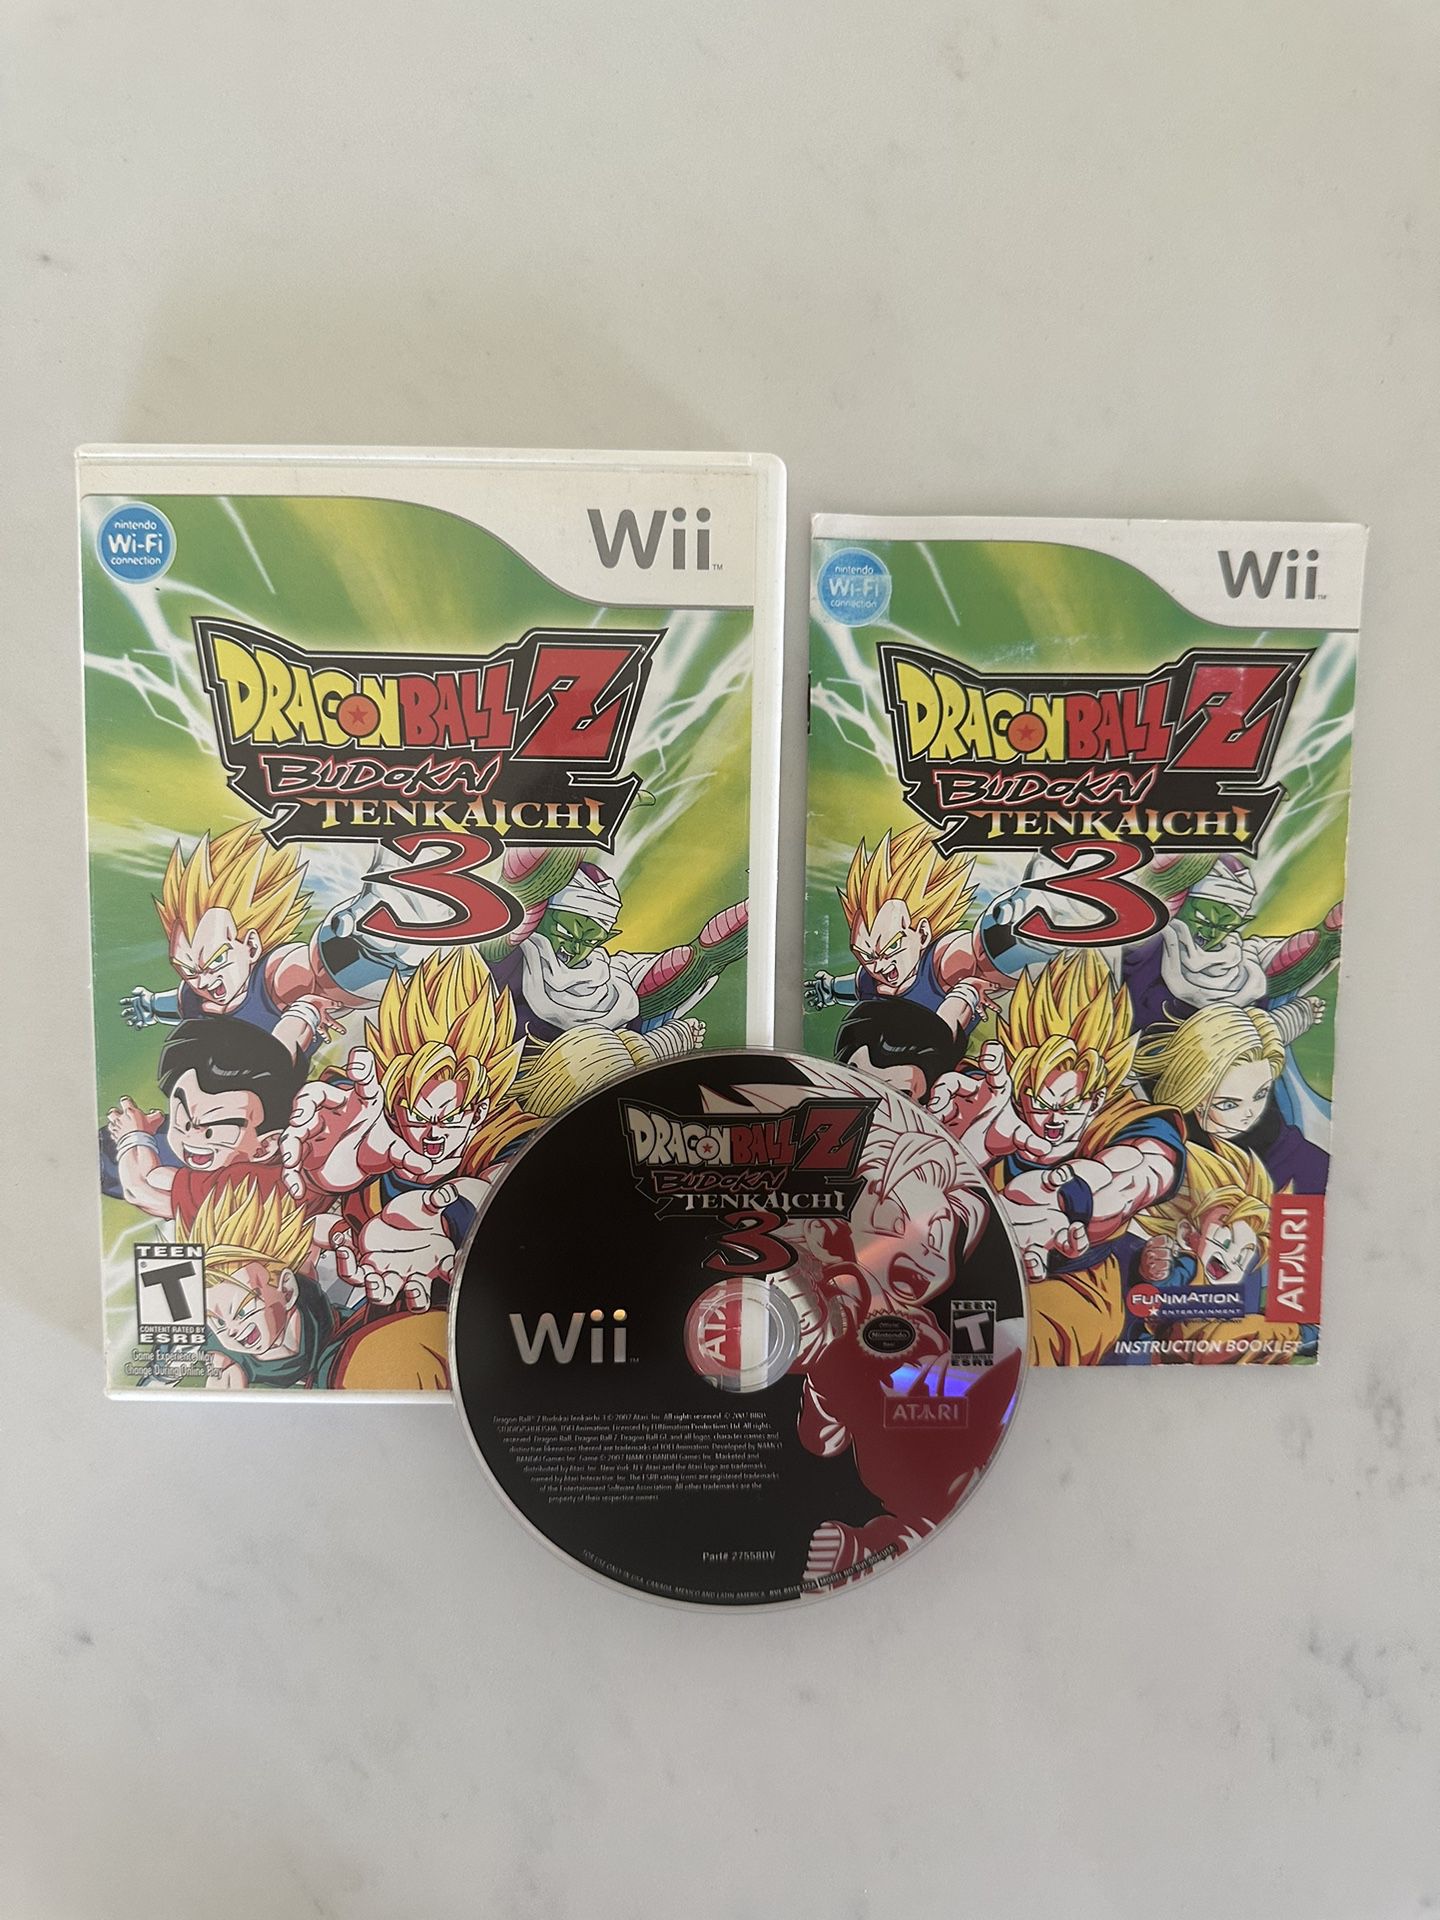 eficaz judío erosión Dragon Ball Z Budokai Tenkaichi 3 Nintendo Wii Video Game for Sale in Chula  Vista, CA - OfferUp